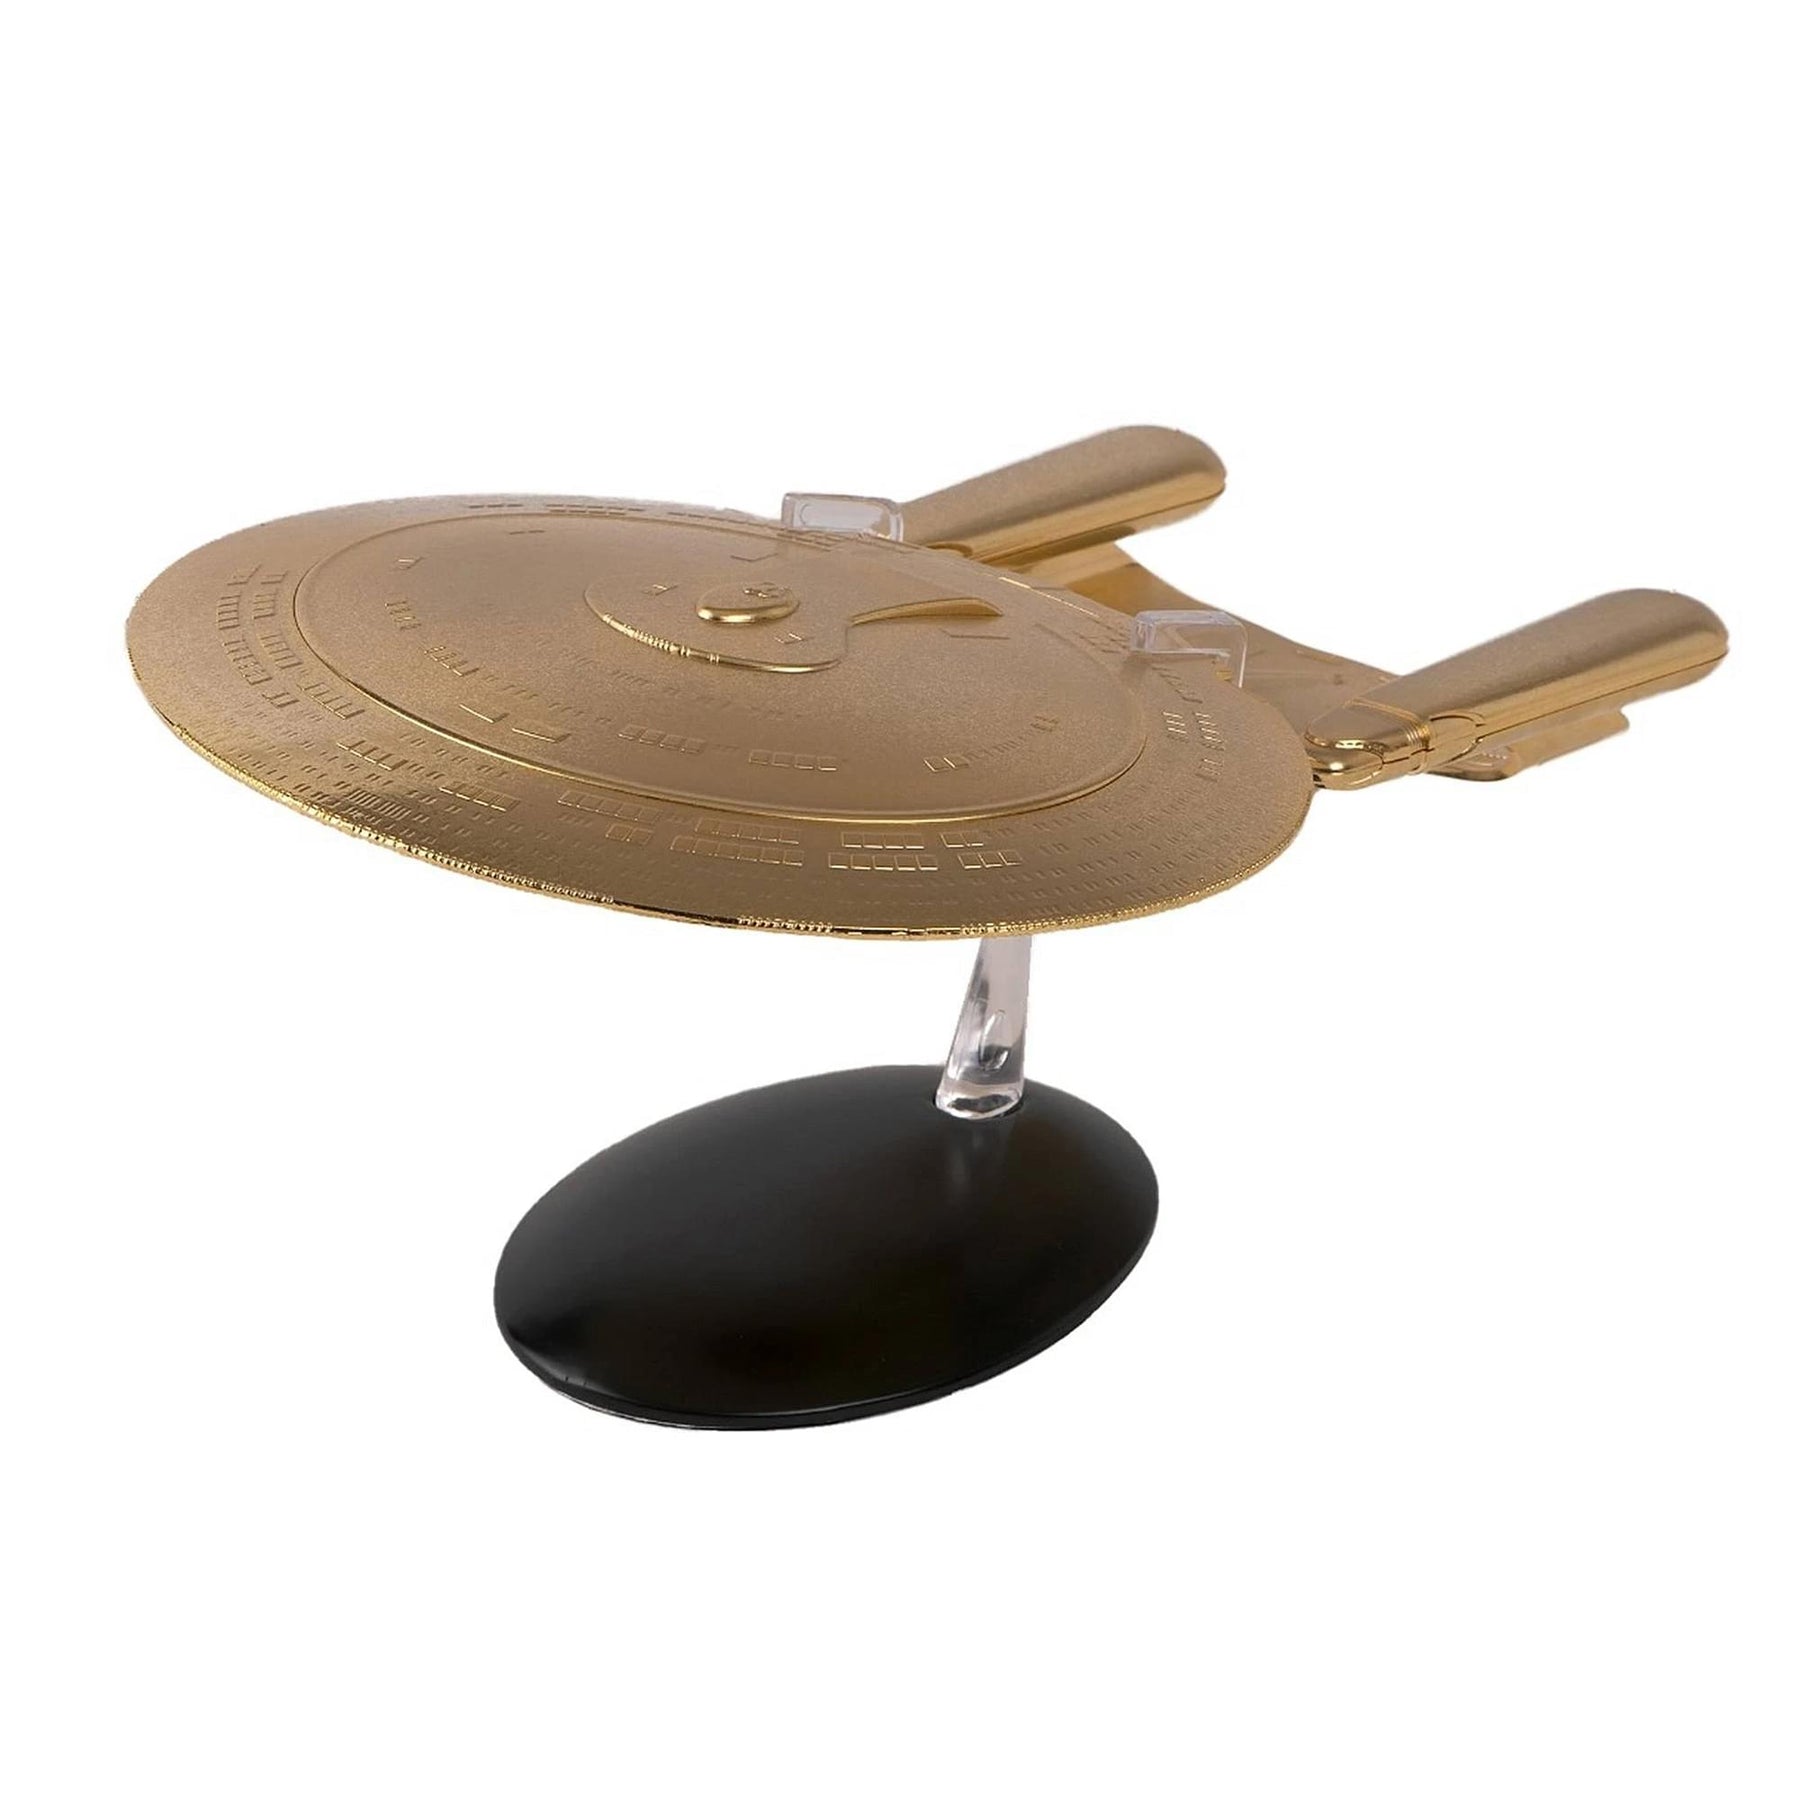 Eaglemoss Star Trek StarShip Replica | 18K Gold USS Enterprise NCC-1701-D New